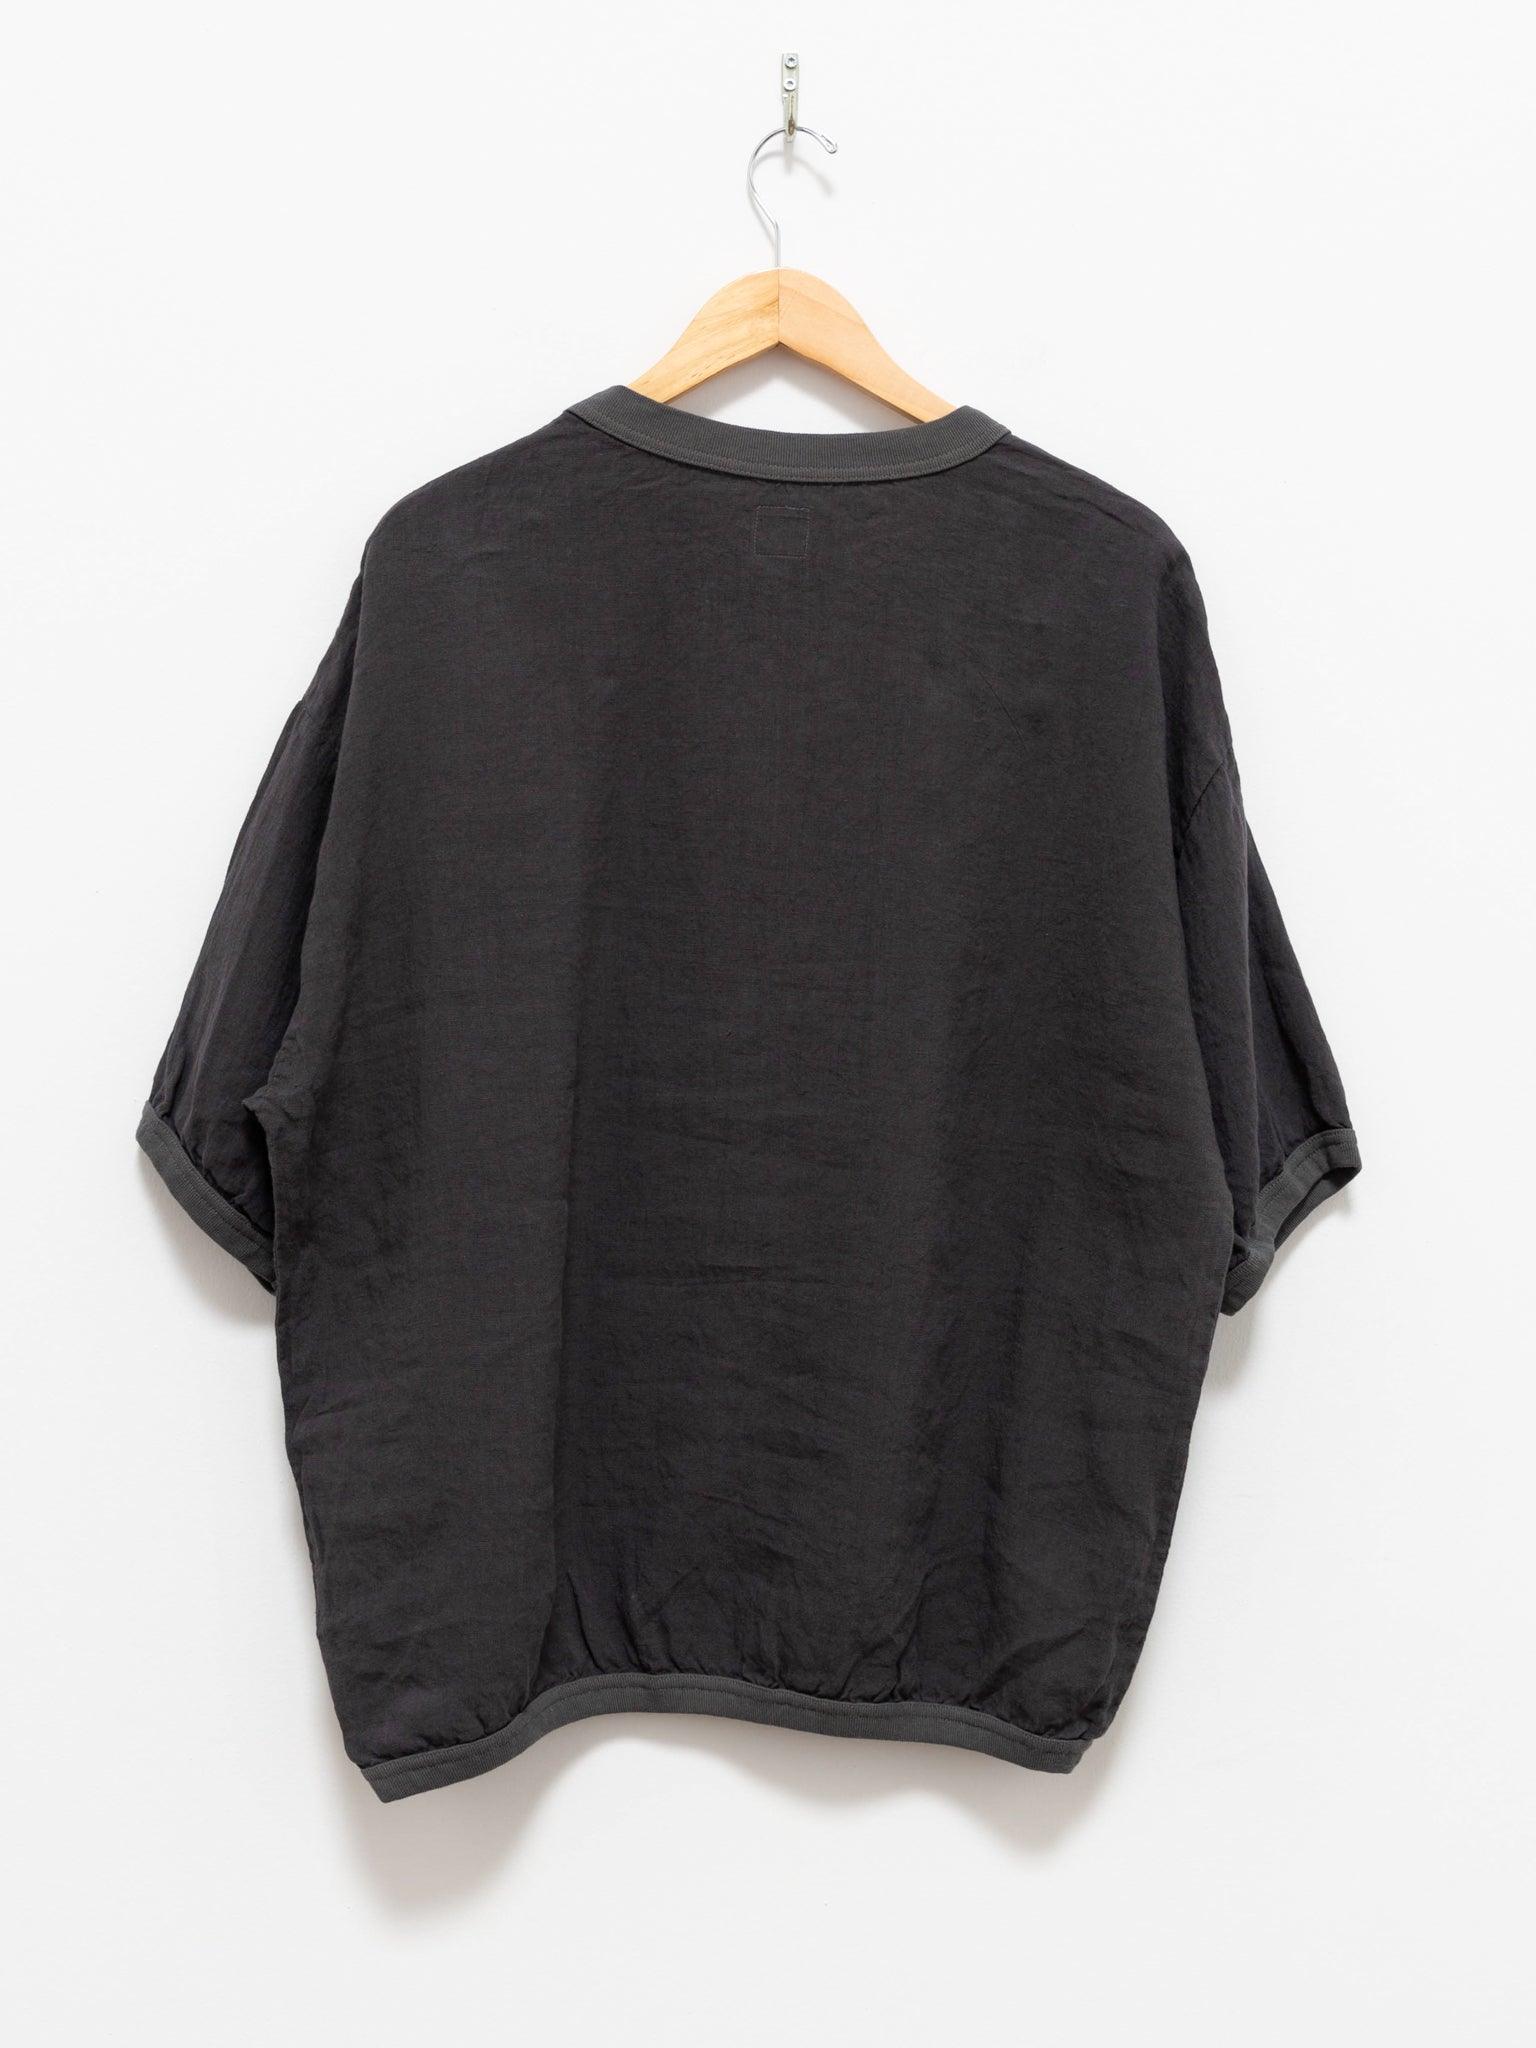 Namu Shop - Maillot Linen Big Sweatshirt Tee - Smoke Gray